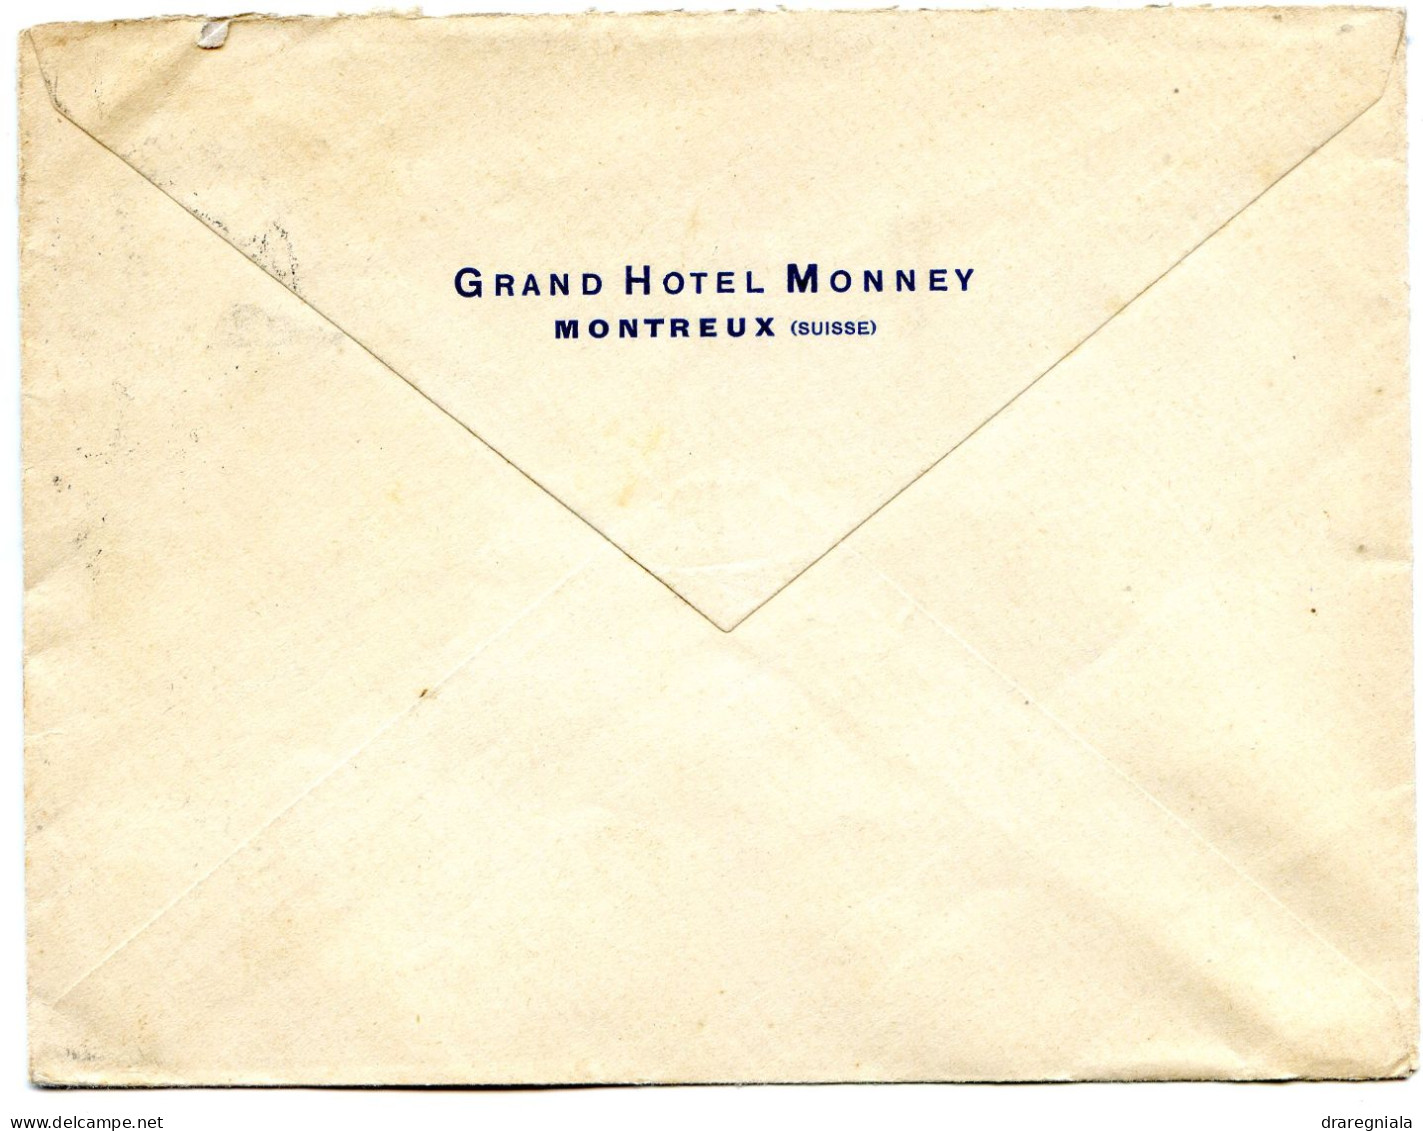 Mail Von Montreux 2 8 1930 - Tellbrustbild 160 - Grand Hotel Monney - Marcophilie